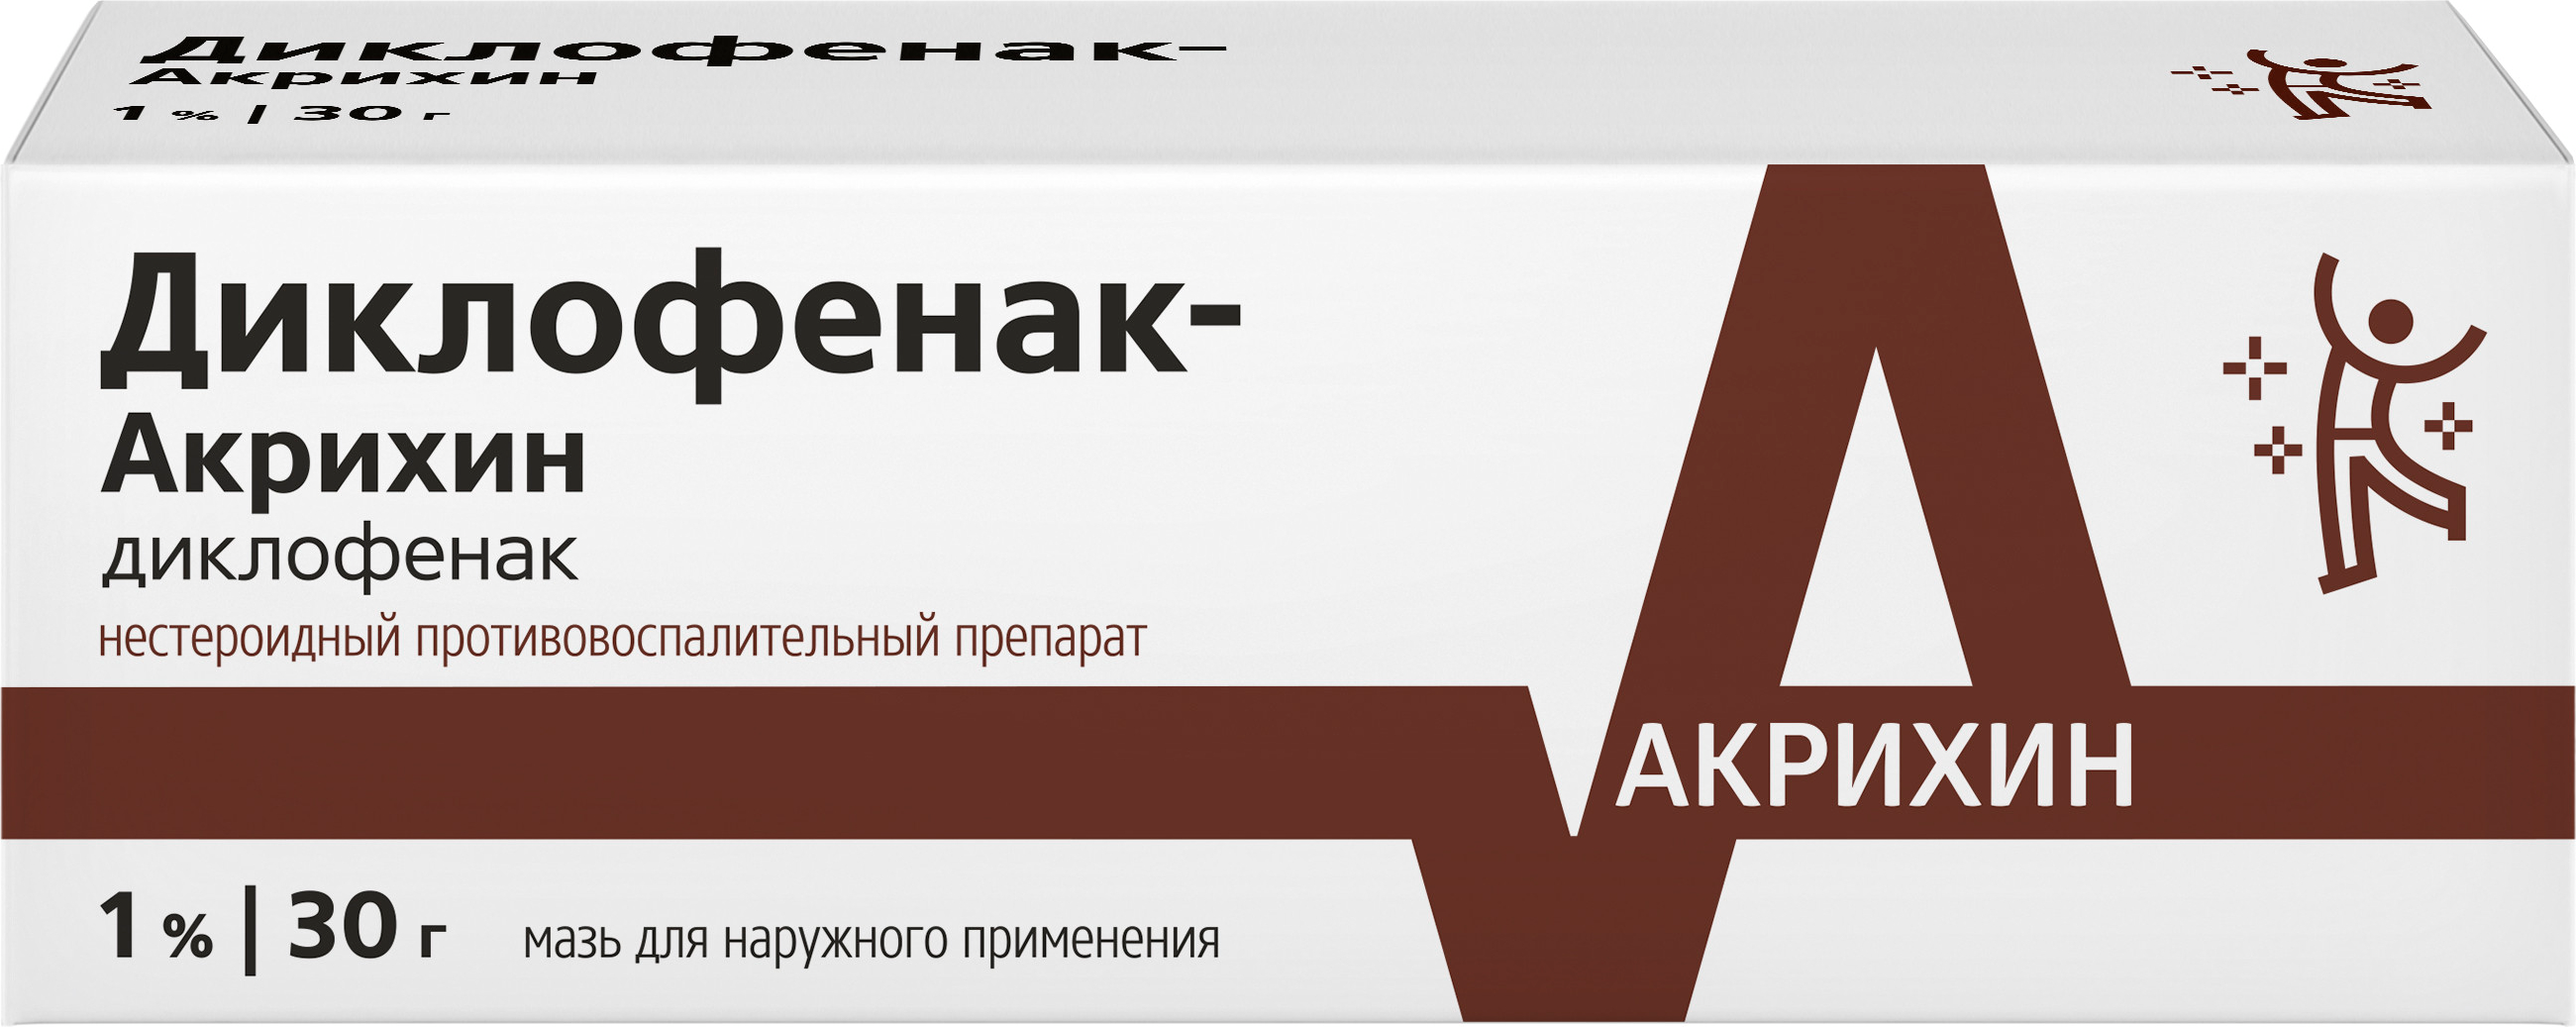 Диклофенак-Акрихин, мазь 1%, 30 г исчезновение йозефа менгеле